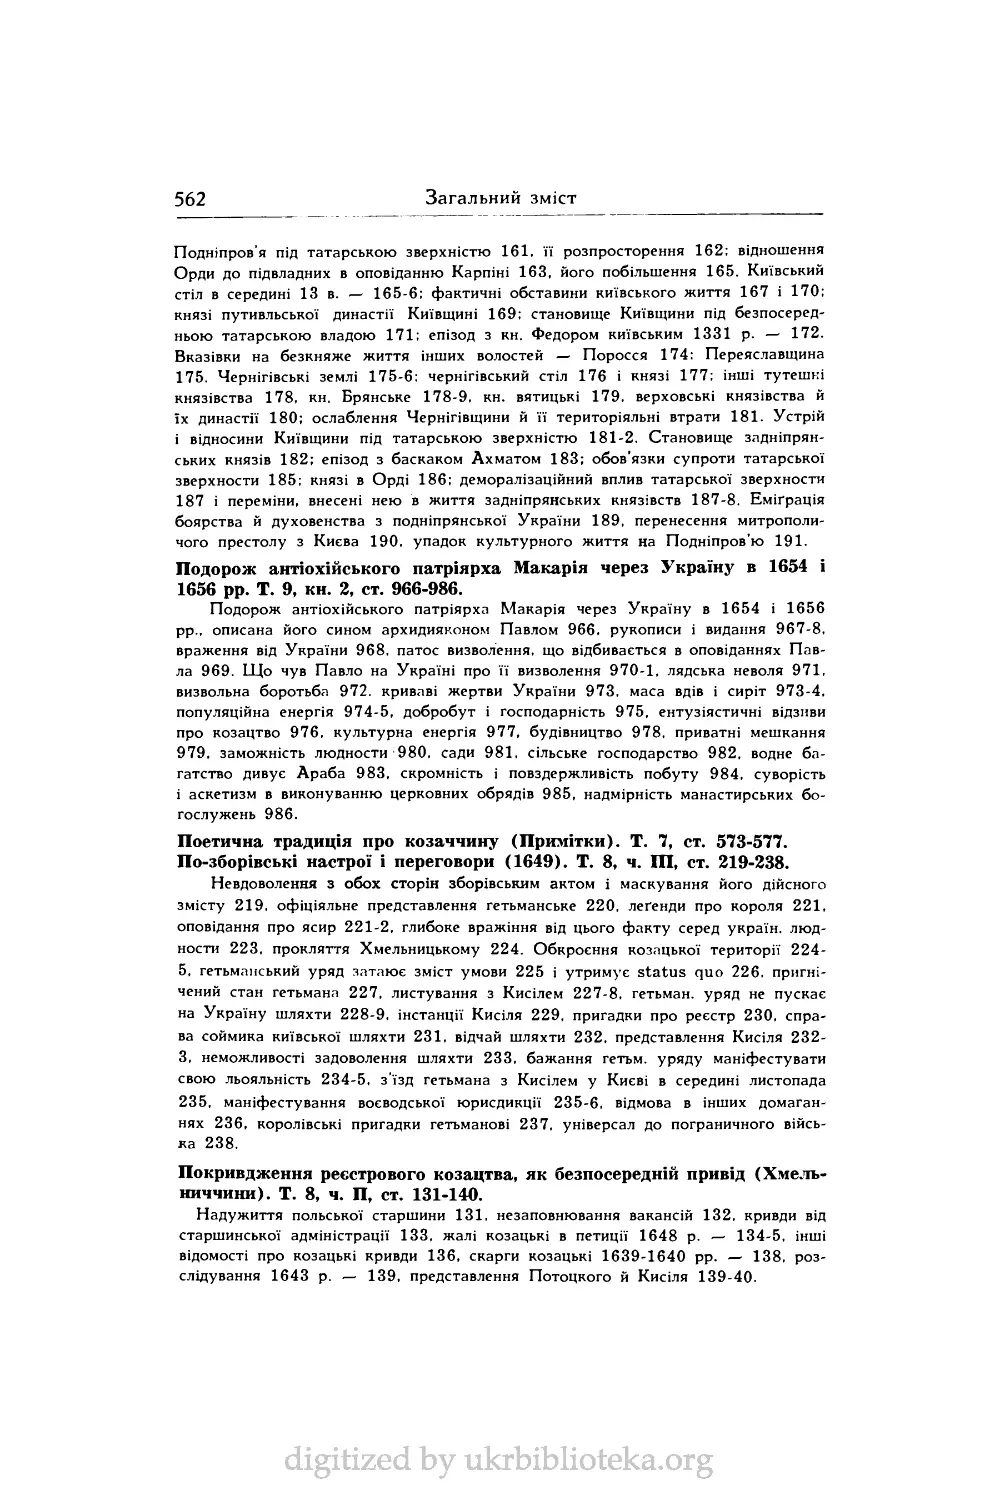 Подорож антіохійського патріярха Макарія через Україну в 1654 і 1656 pp. Т. 9, кн. 2, ст. 966-986.